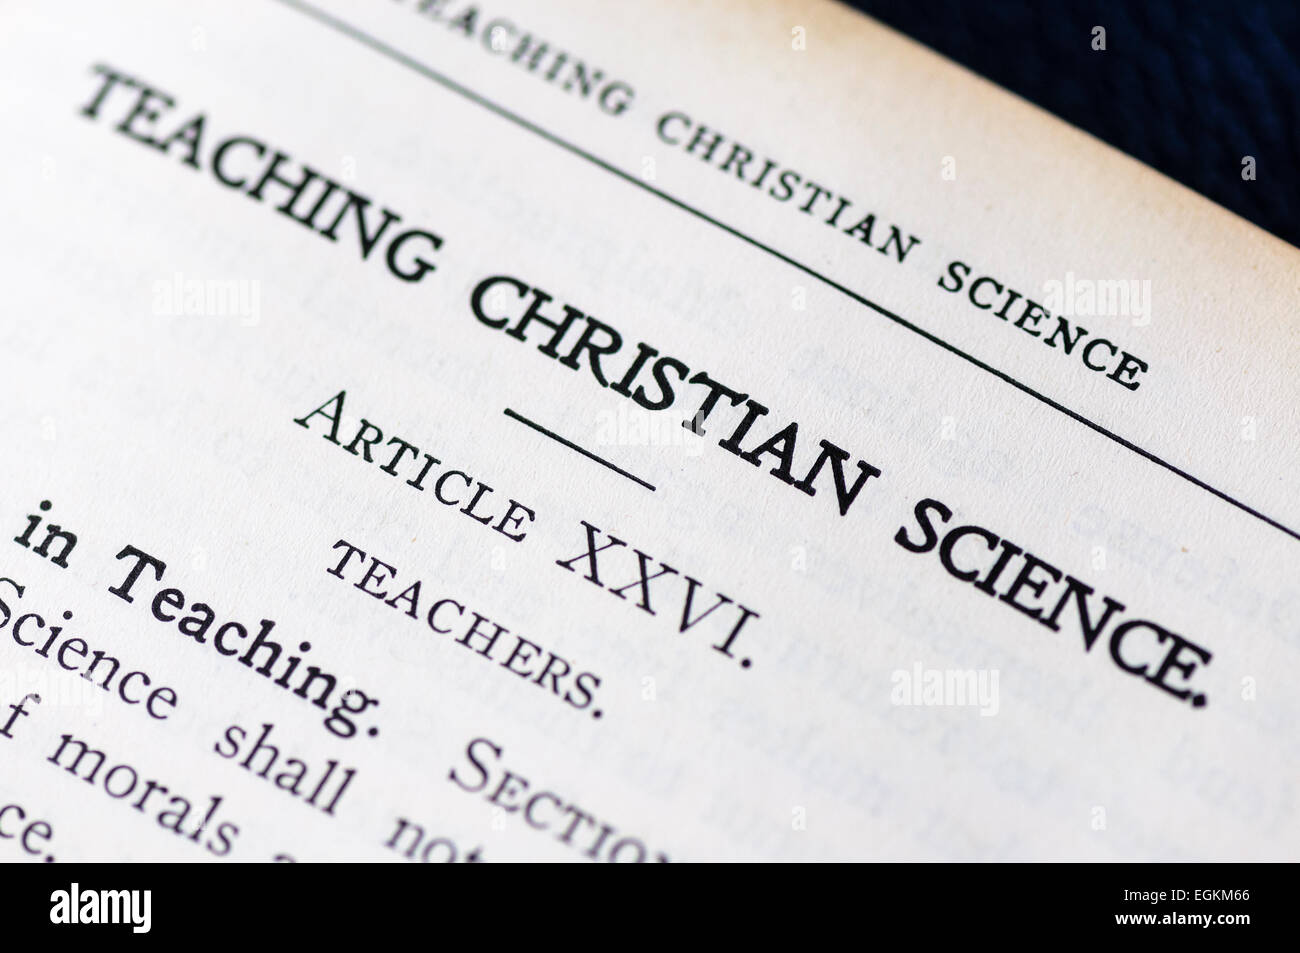 "Christian naturwissenschaftlichen Unterricht" in der Kirche Regelbuch Stockfoto